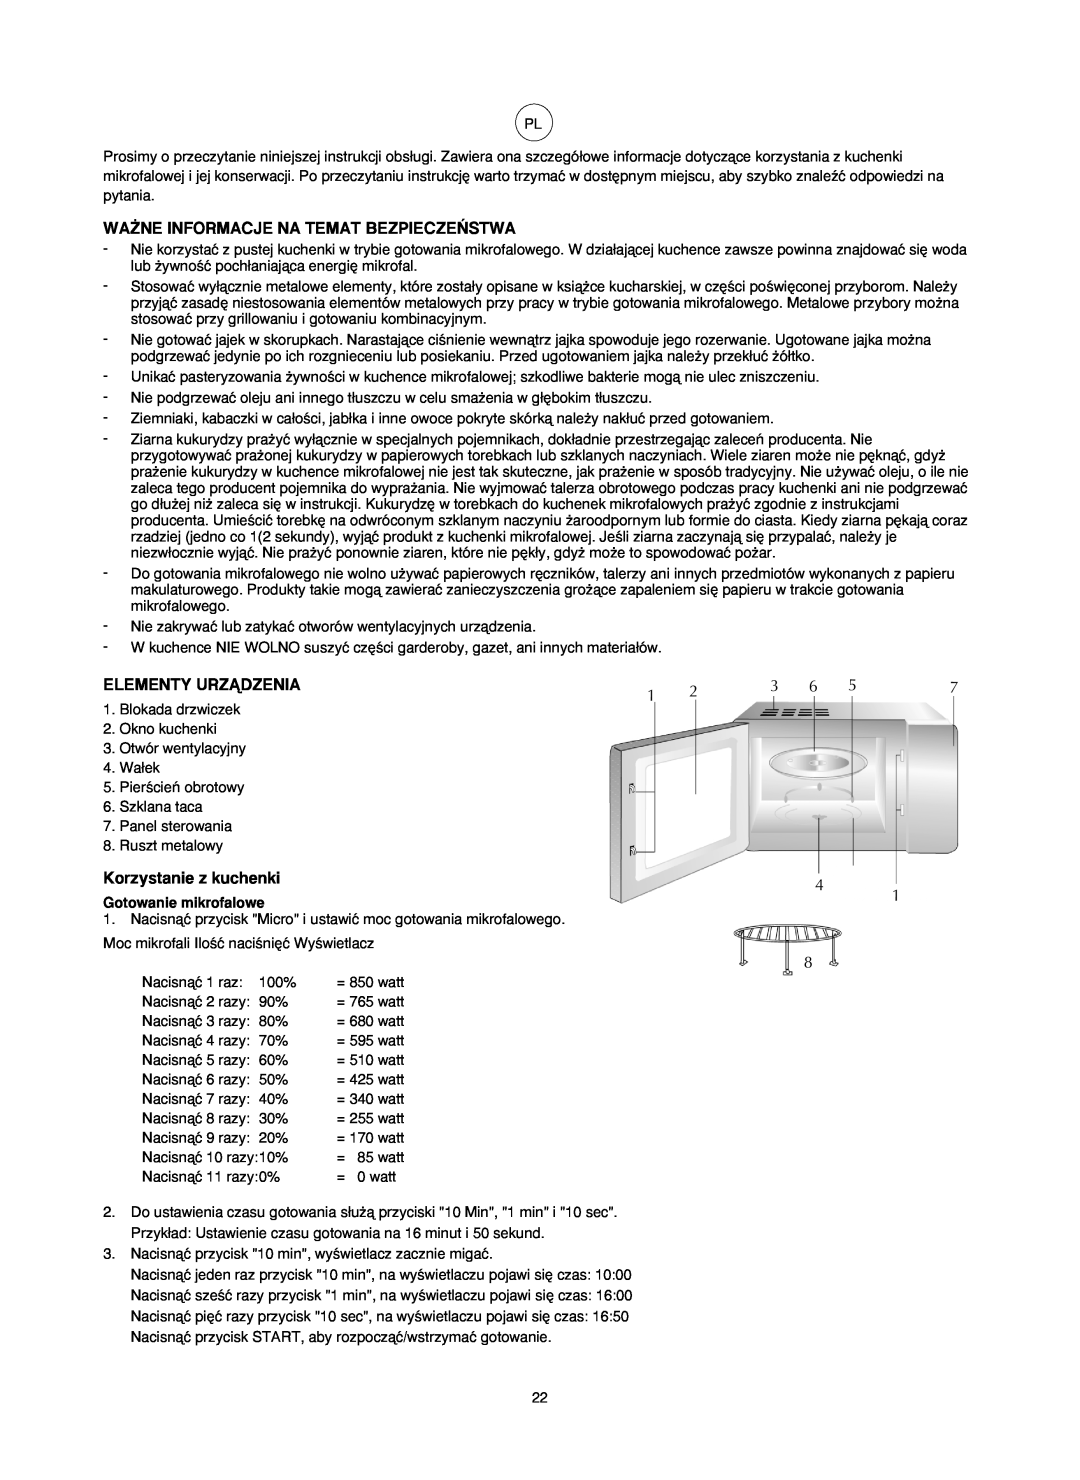 Melissa ED8525S-SA manual Wa˚Ne Informacje Na Temat Bezpiecze¡Stwa, Elementy Urzñdzenia, Korzystanie z kuchenki 